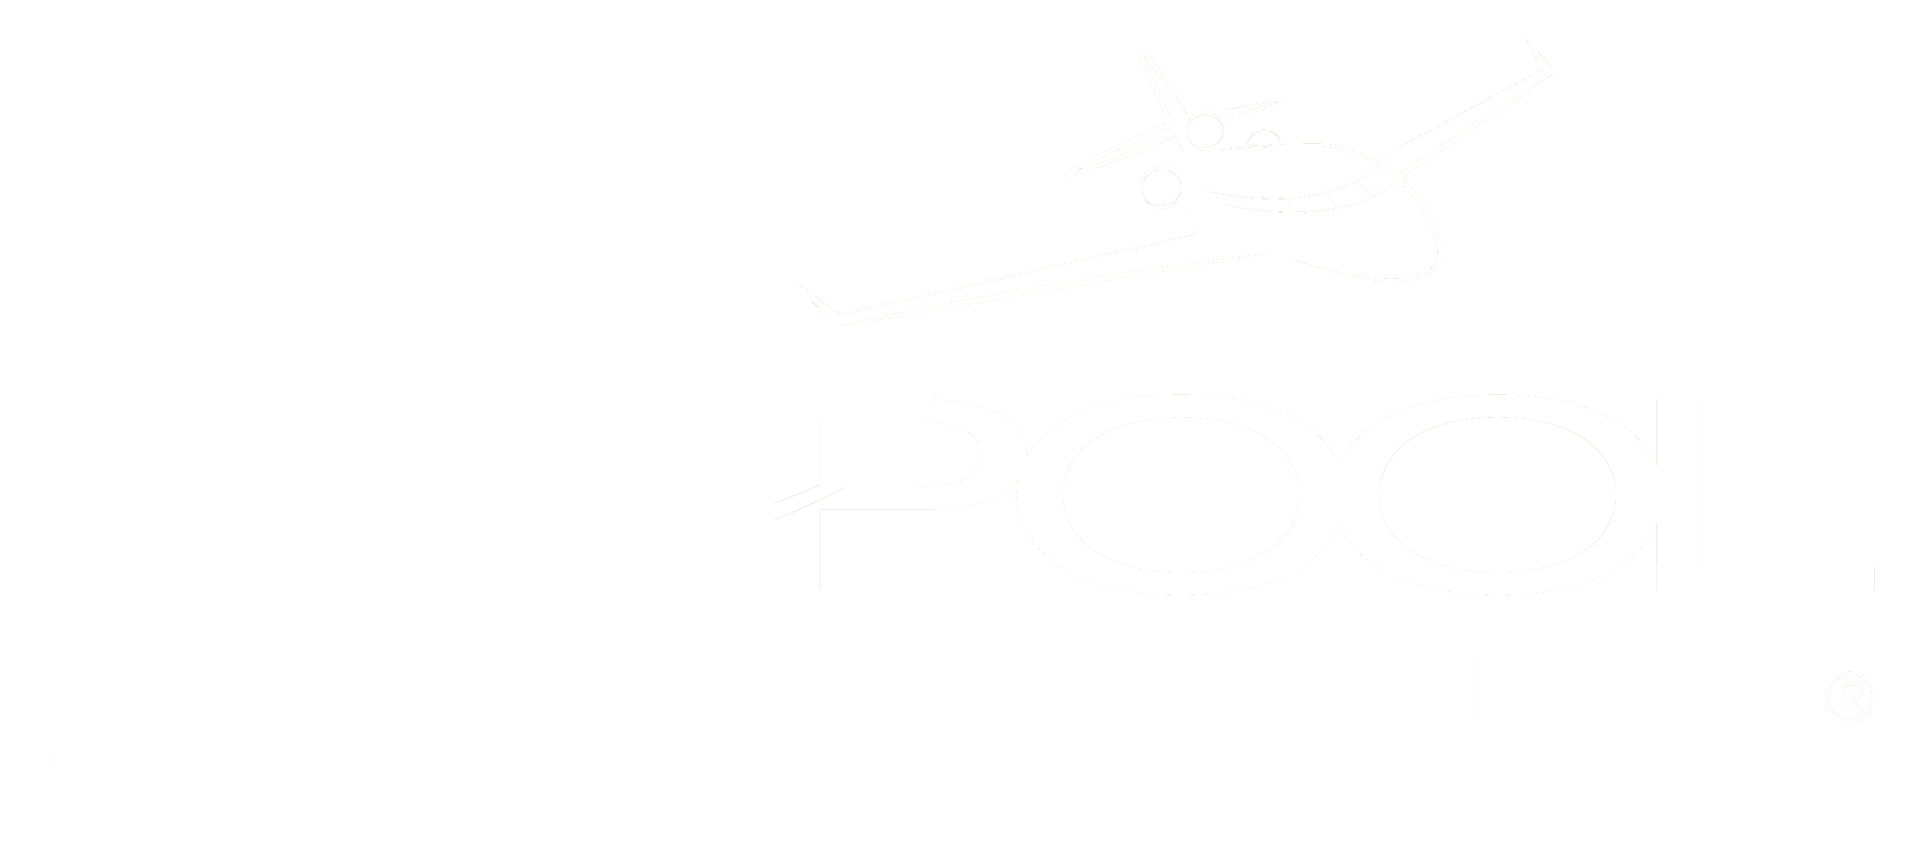 Logo Jetpool Network footer